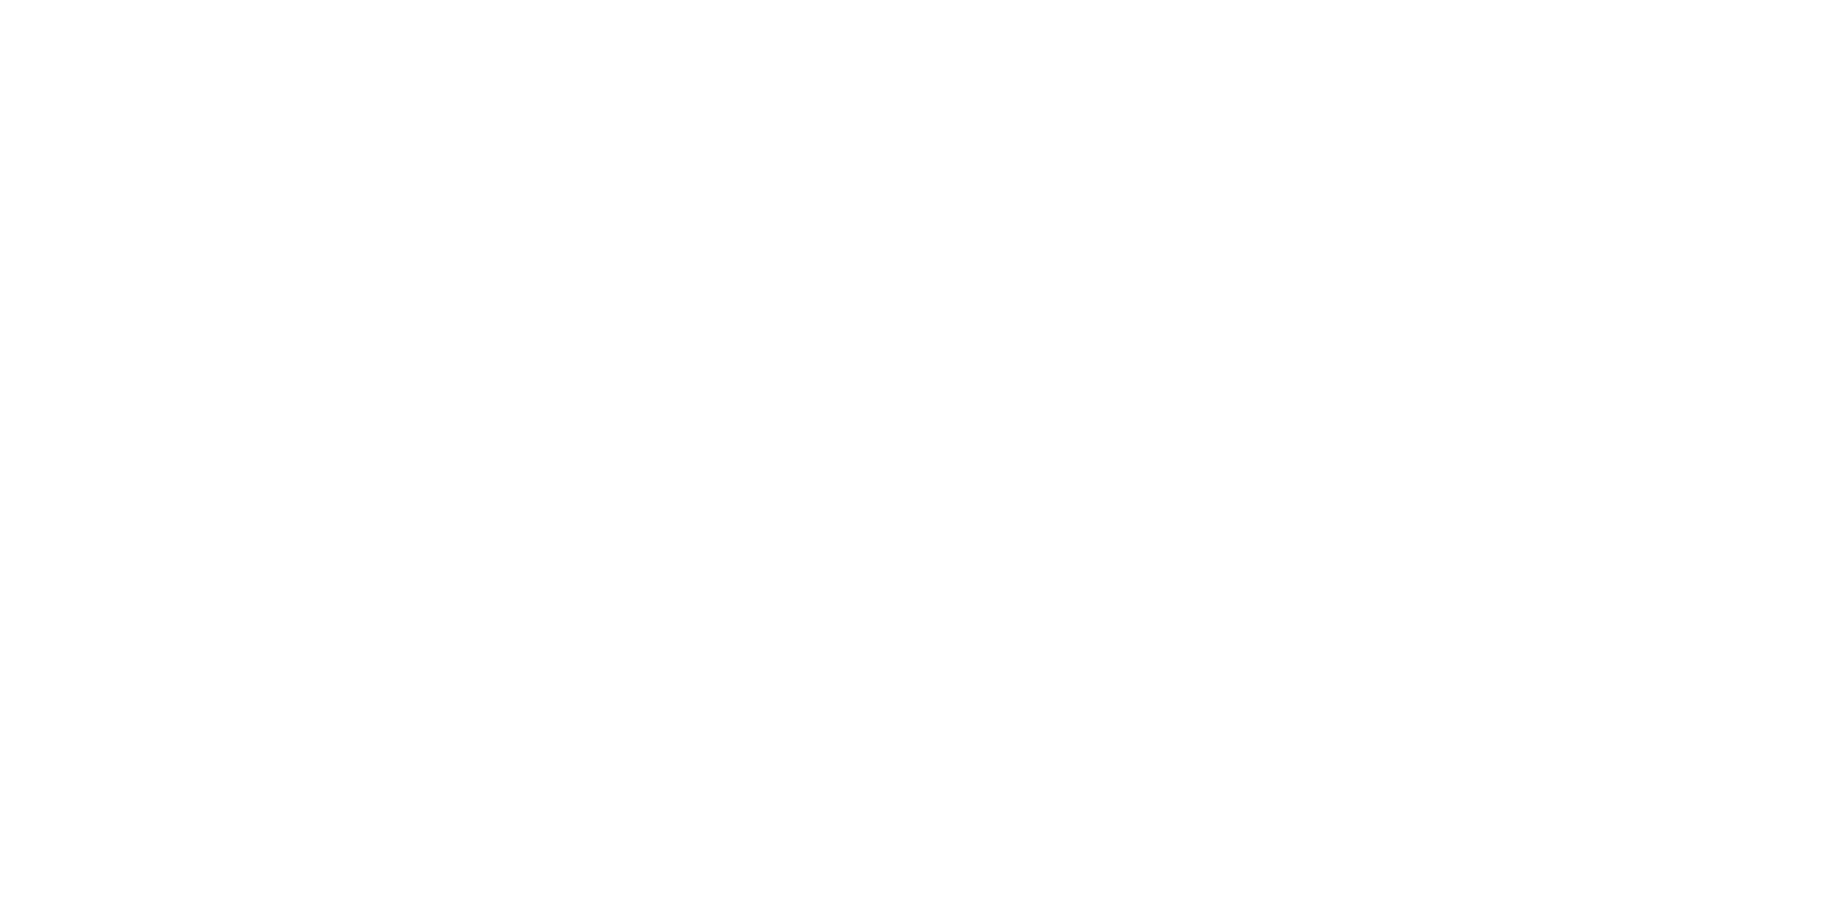 Offsite Engineering